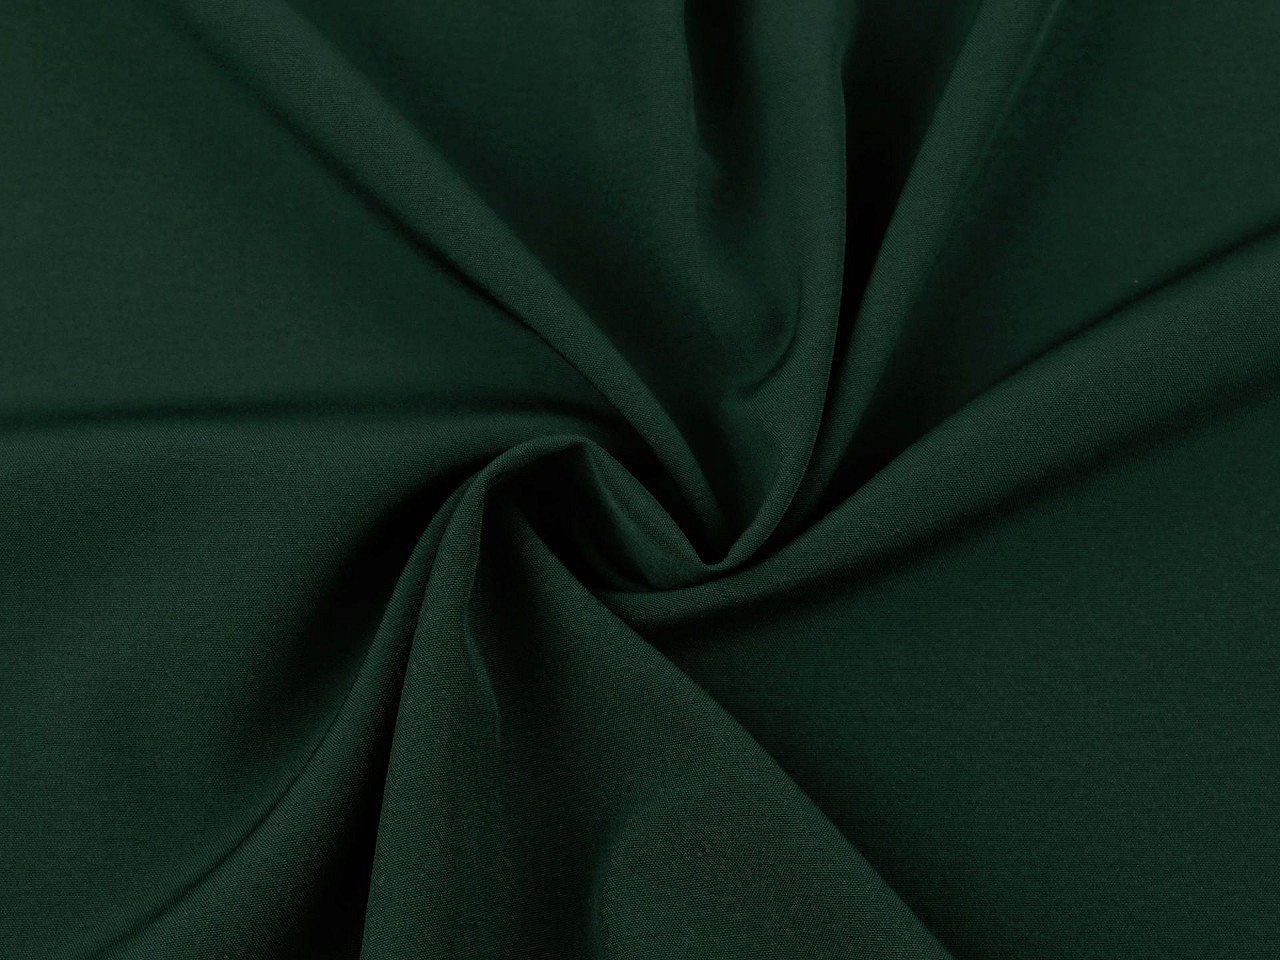 Šatovka hladká, barva 8 (054) zelená tmavá